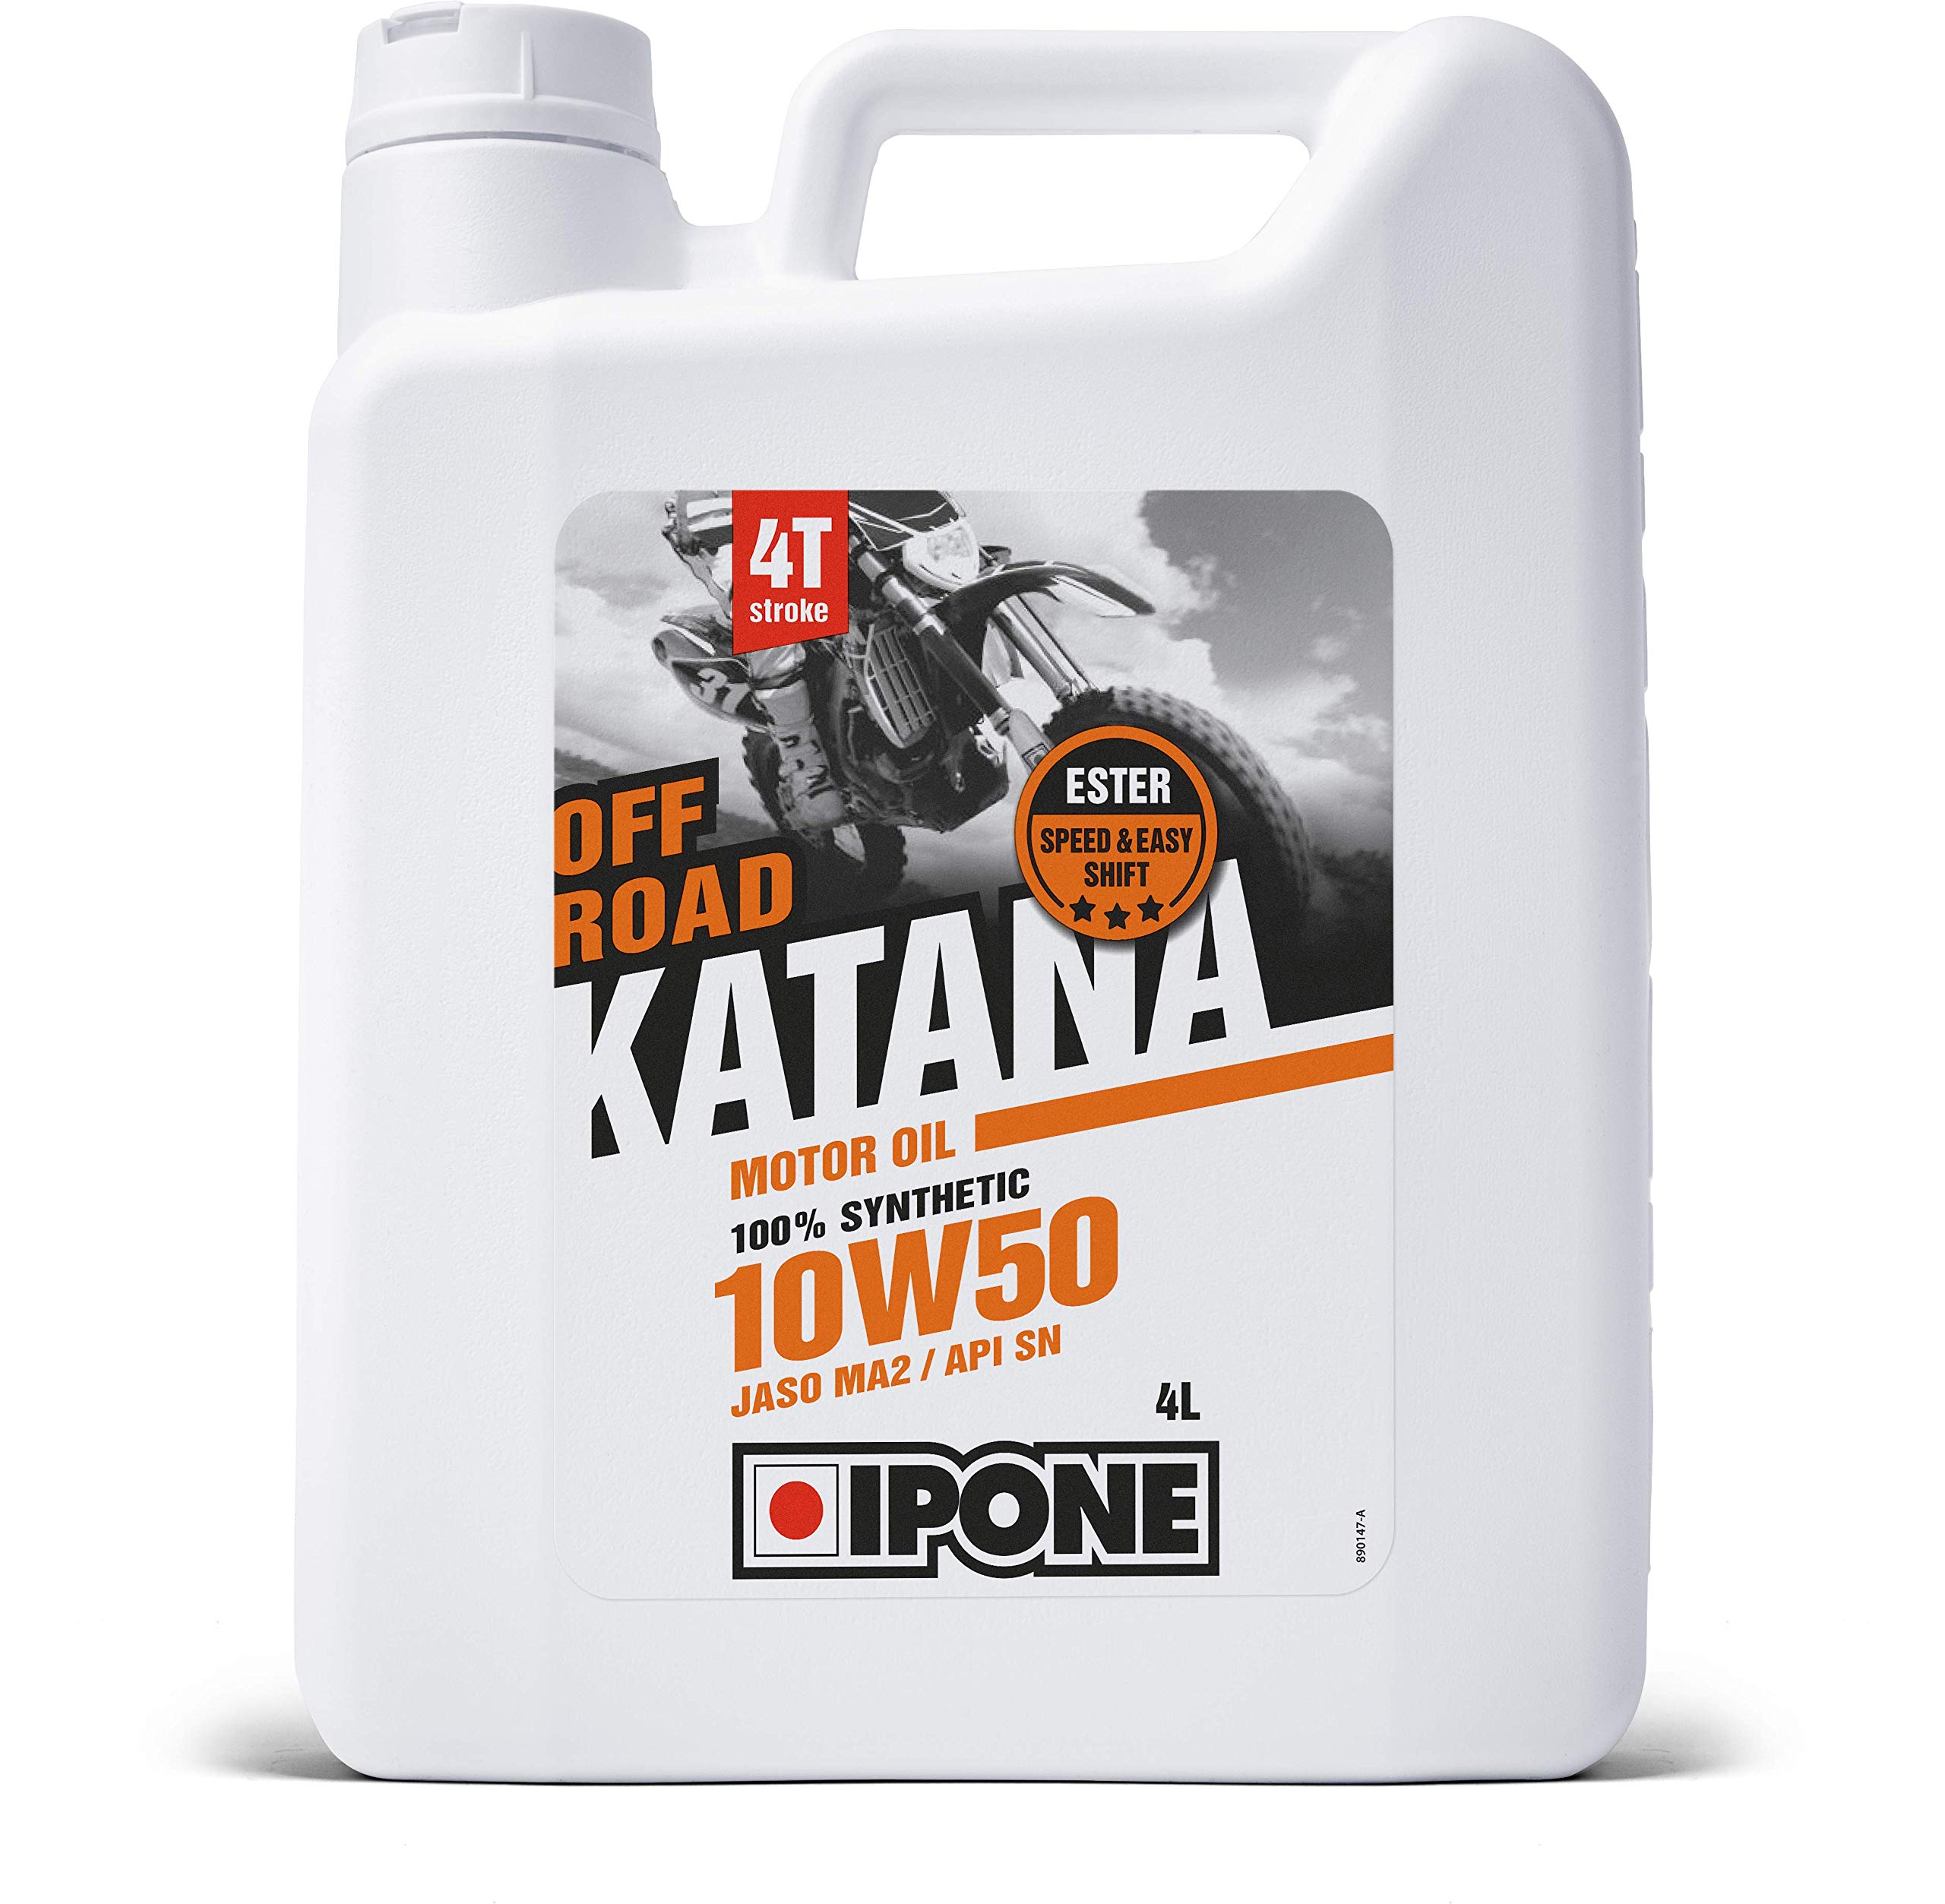 Ipone - Motoröl 4-Takt-Motorrad 10W50 Katana Off Road -100% synthetisch mit Estern - Schnelles und präzises Schalten - 4L-Kanister